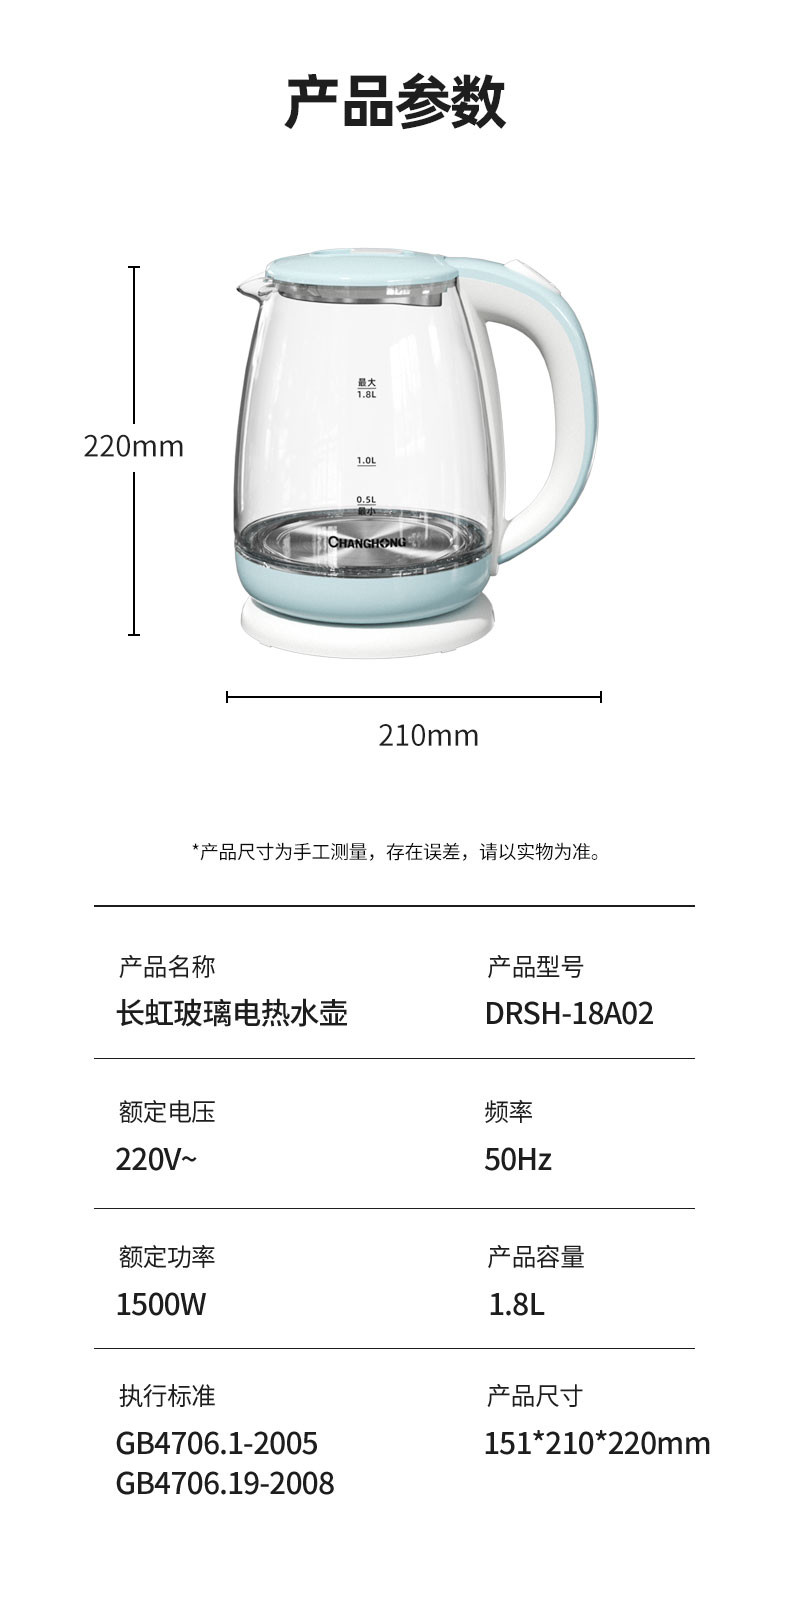 长虹 玻璃电水壶DRSH-18A02